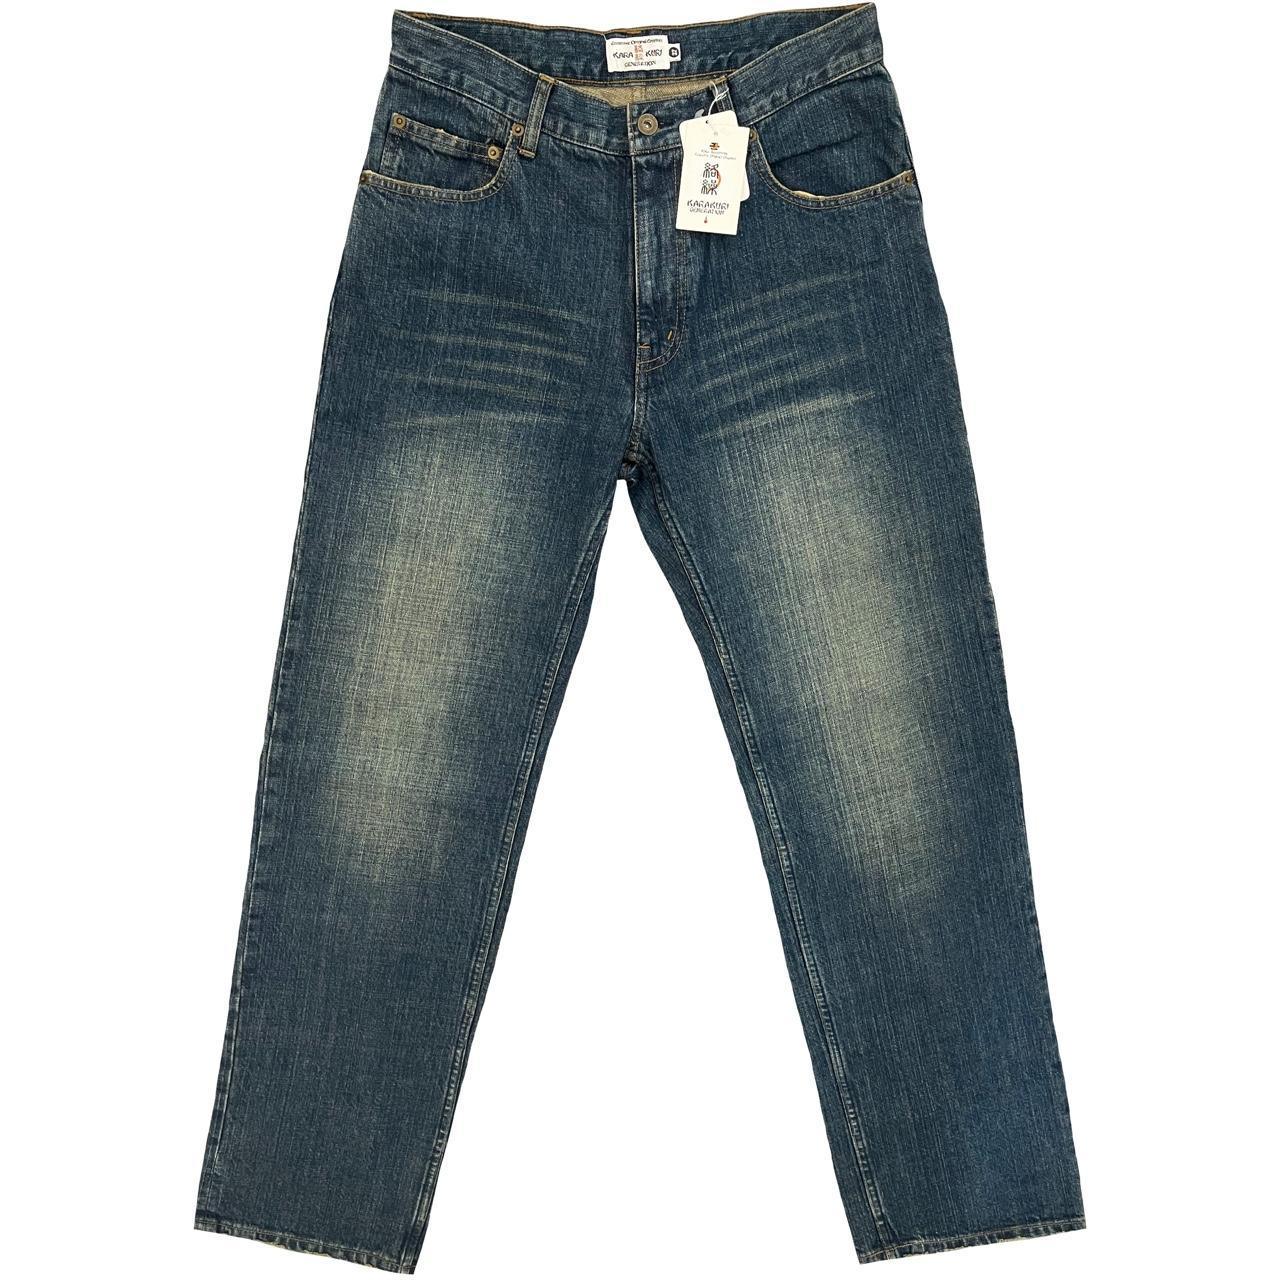 Karakuri Tamashii Multipocket Jeans - Known Source